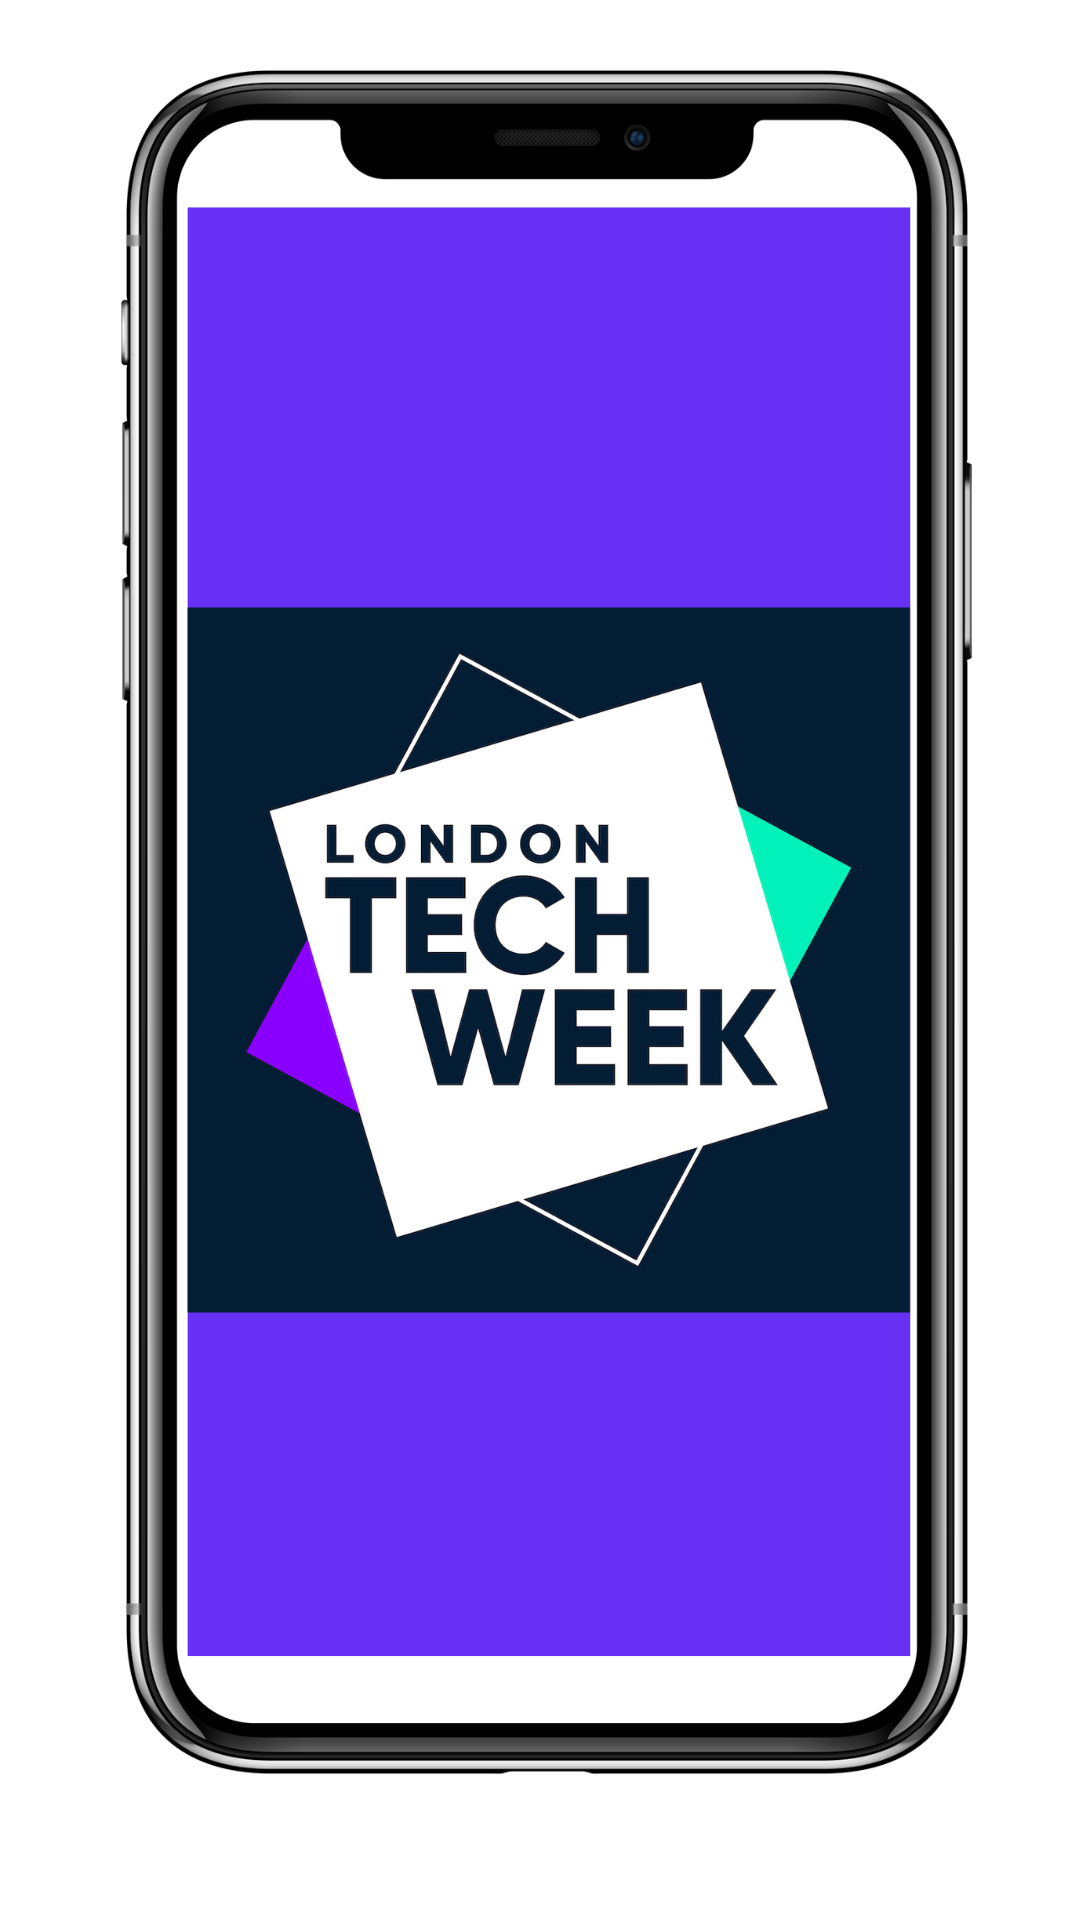 London Tech Week Event App